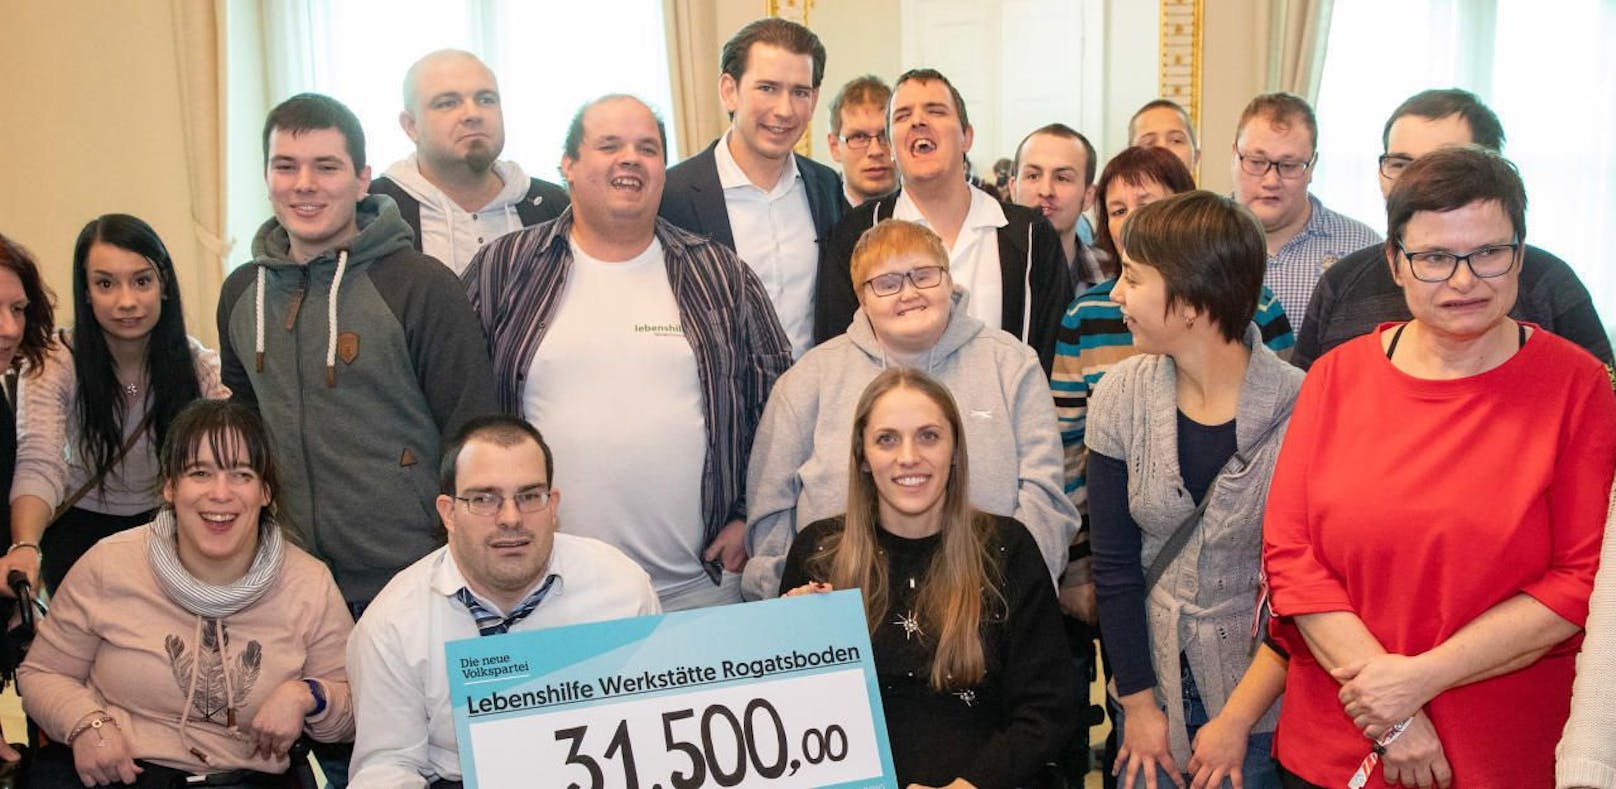 Bundeskanzler Sebastian Kurz (VP) überreicht 31.500 Euro an die Lebenshilfe Werkstätte Rogatsboden.